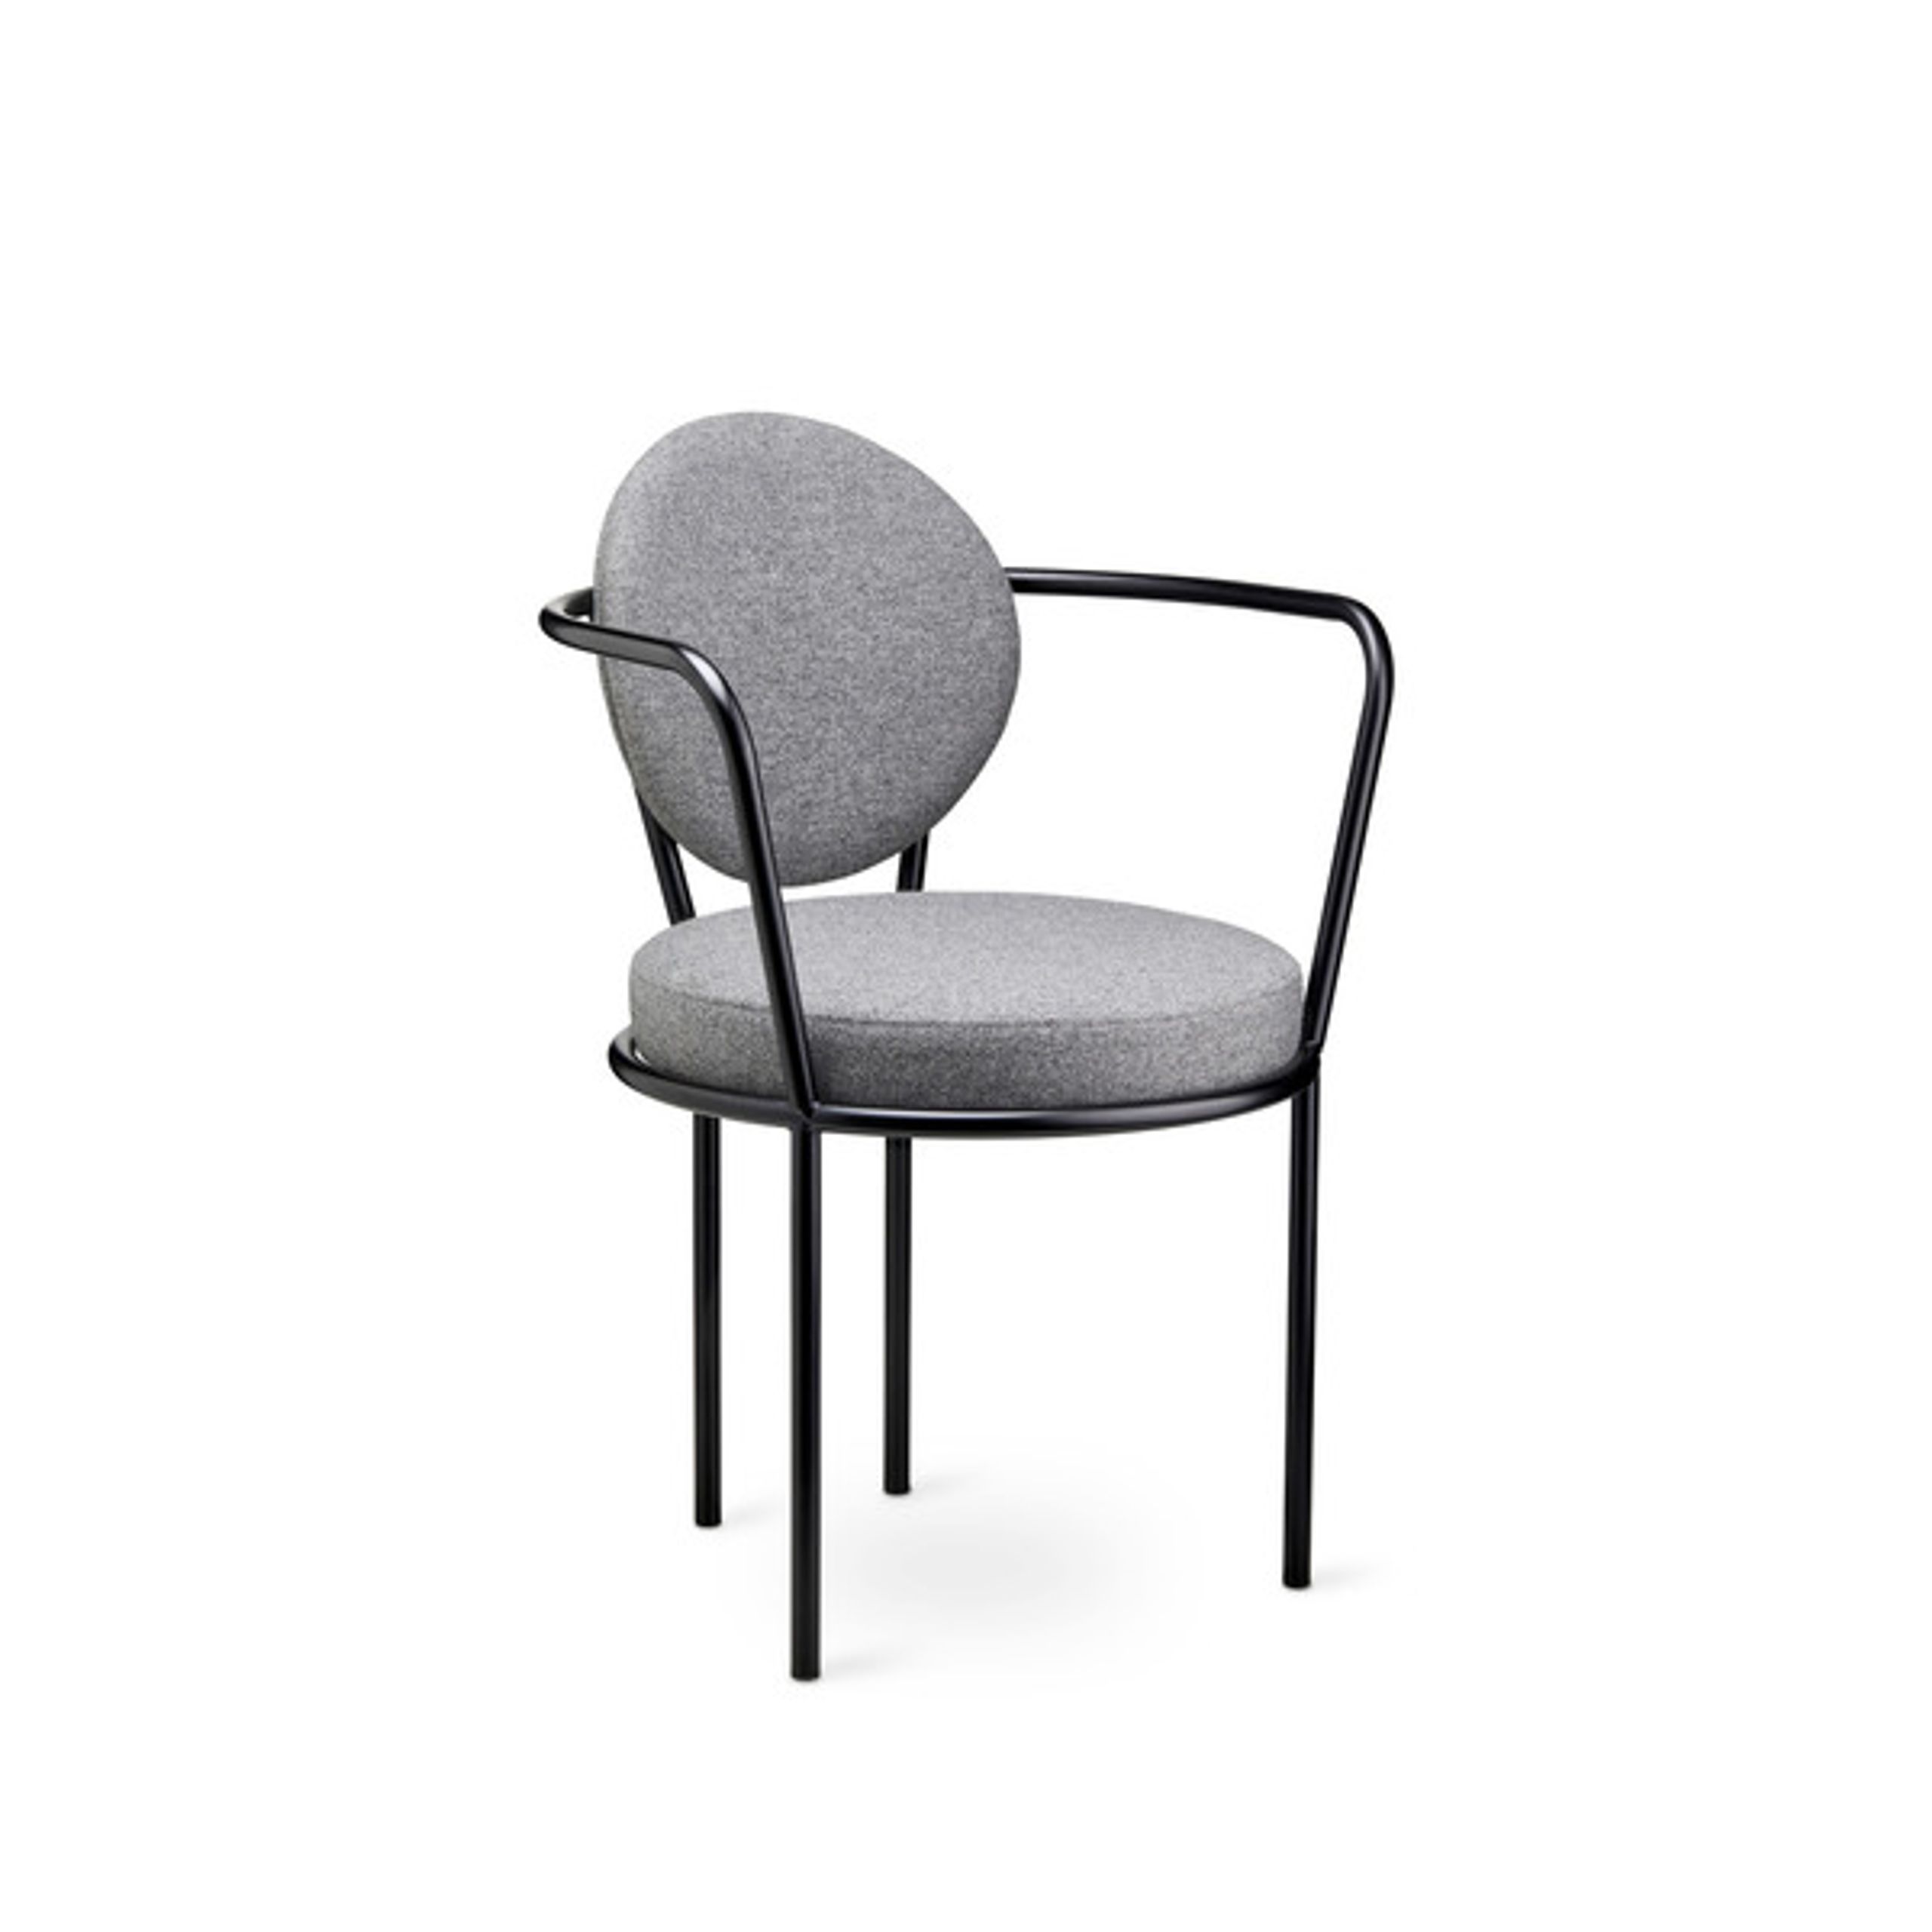 Design By Us - Esstischstuhl - Casablanca chair - Black Frame - Wool Nevotex Trio - Stone